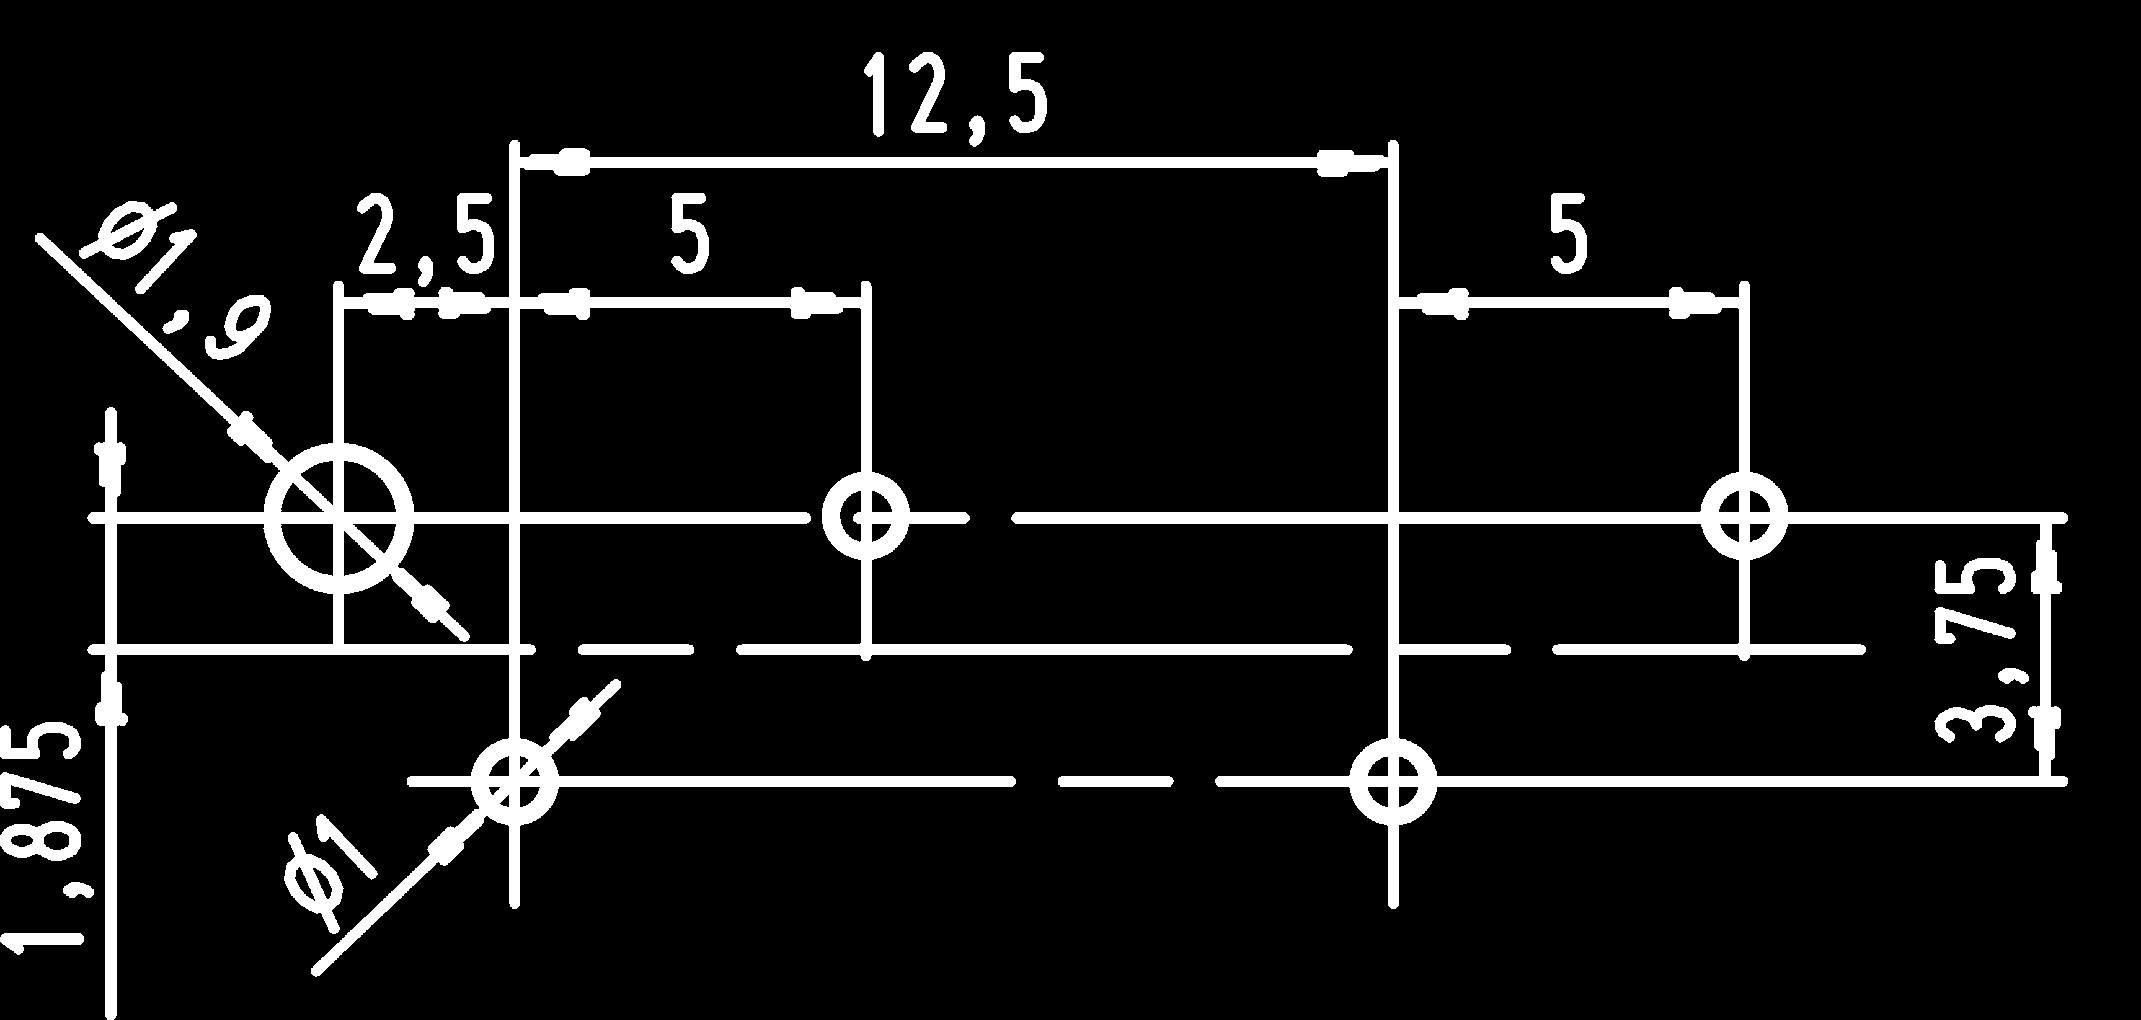 Serie / Series MS 7250 Wannenriegel für Serien MF 7234, 7260 Pin connectors for series MF 7234, 7260 Serie MS 7250, nach RAST 2,5 für senkrechtes Stecken Series MS 7250, to RAST 2.